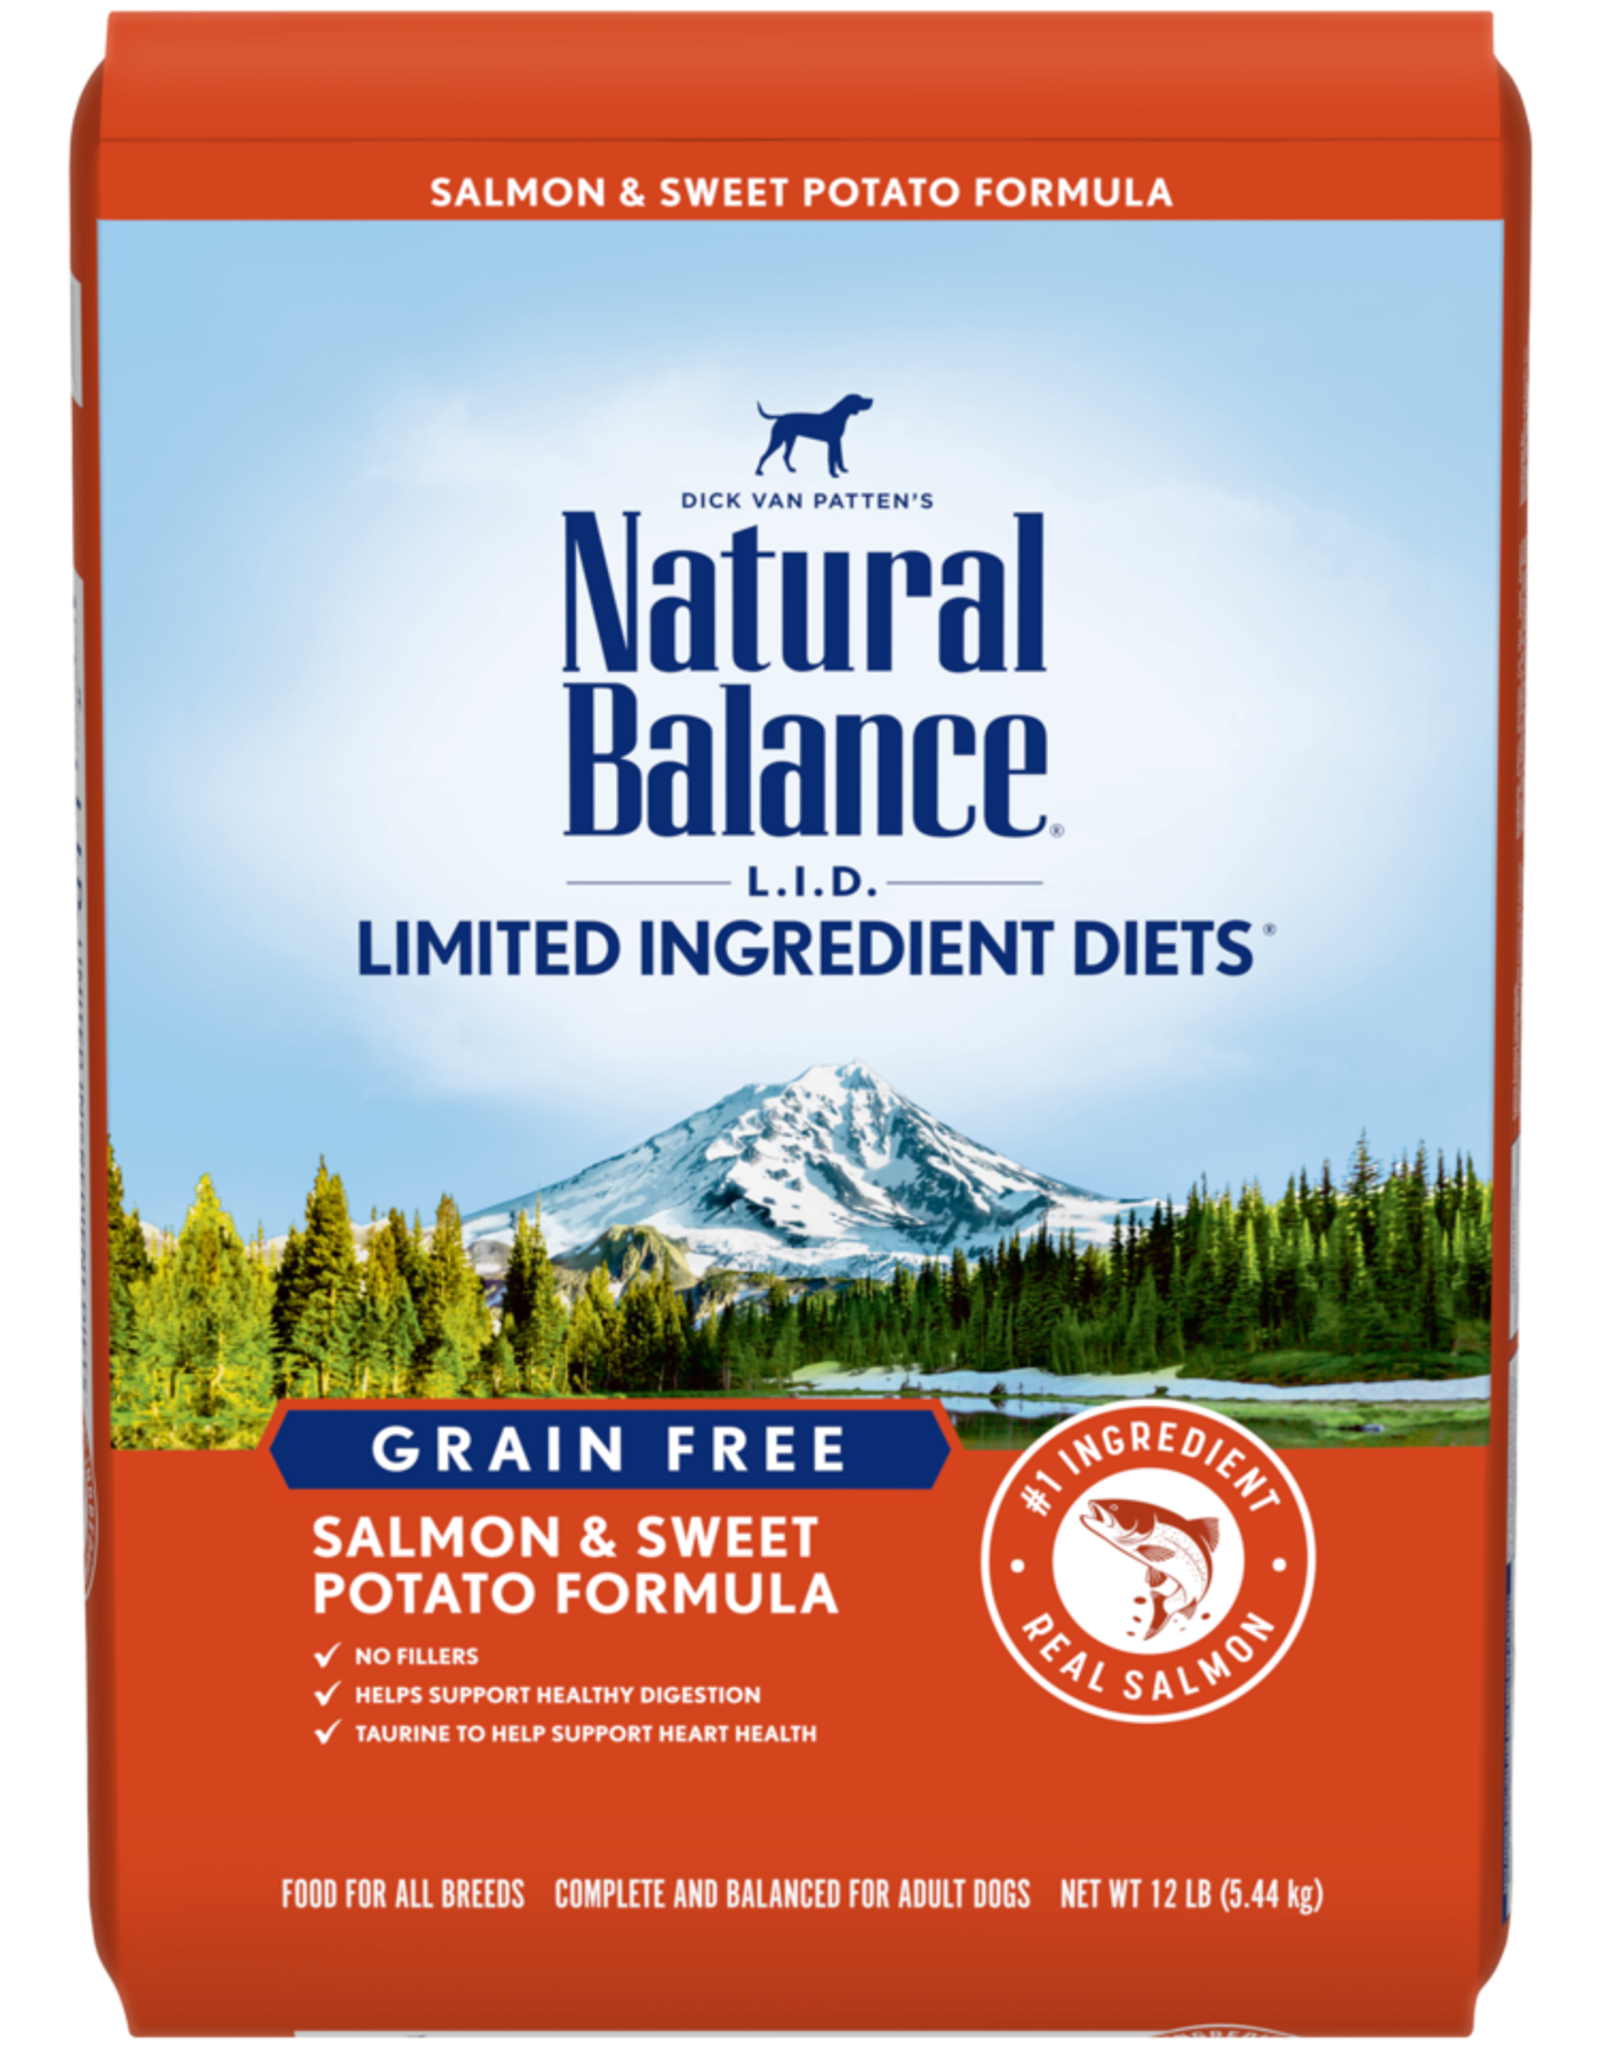 NATURAL BALANCE PET FOODS, INC NATURAL BALANCE DOG GRAIN FREE LID SALMON & SWEET POTATO 4.5LBS